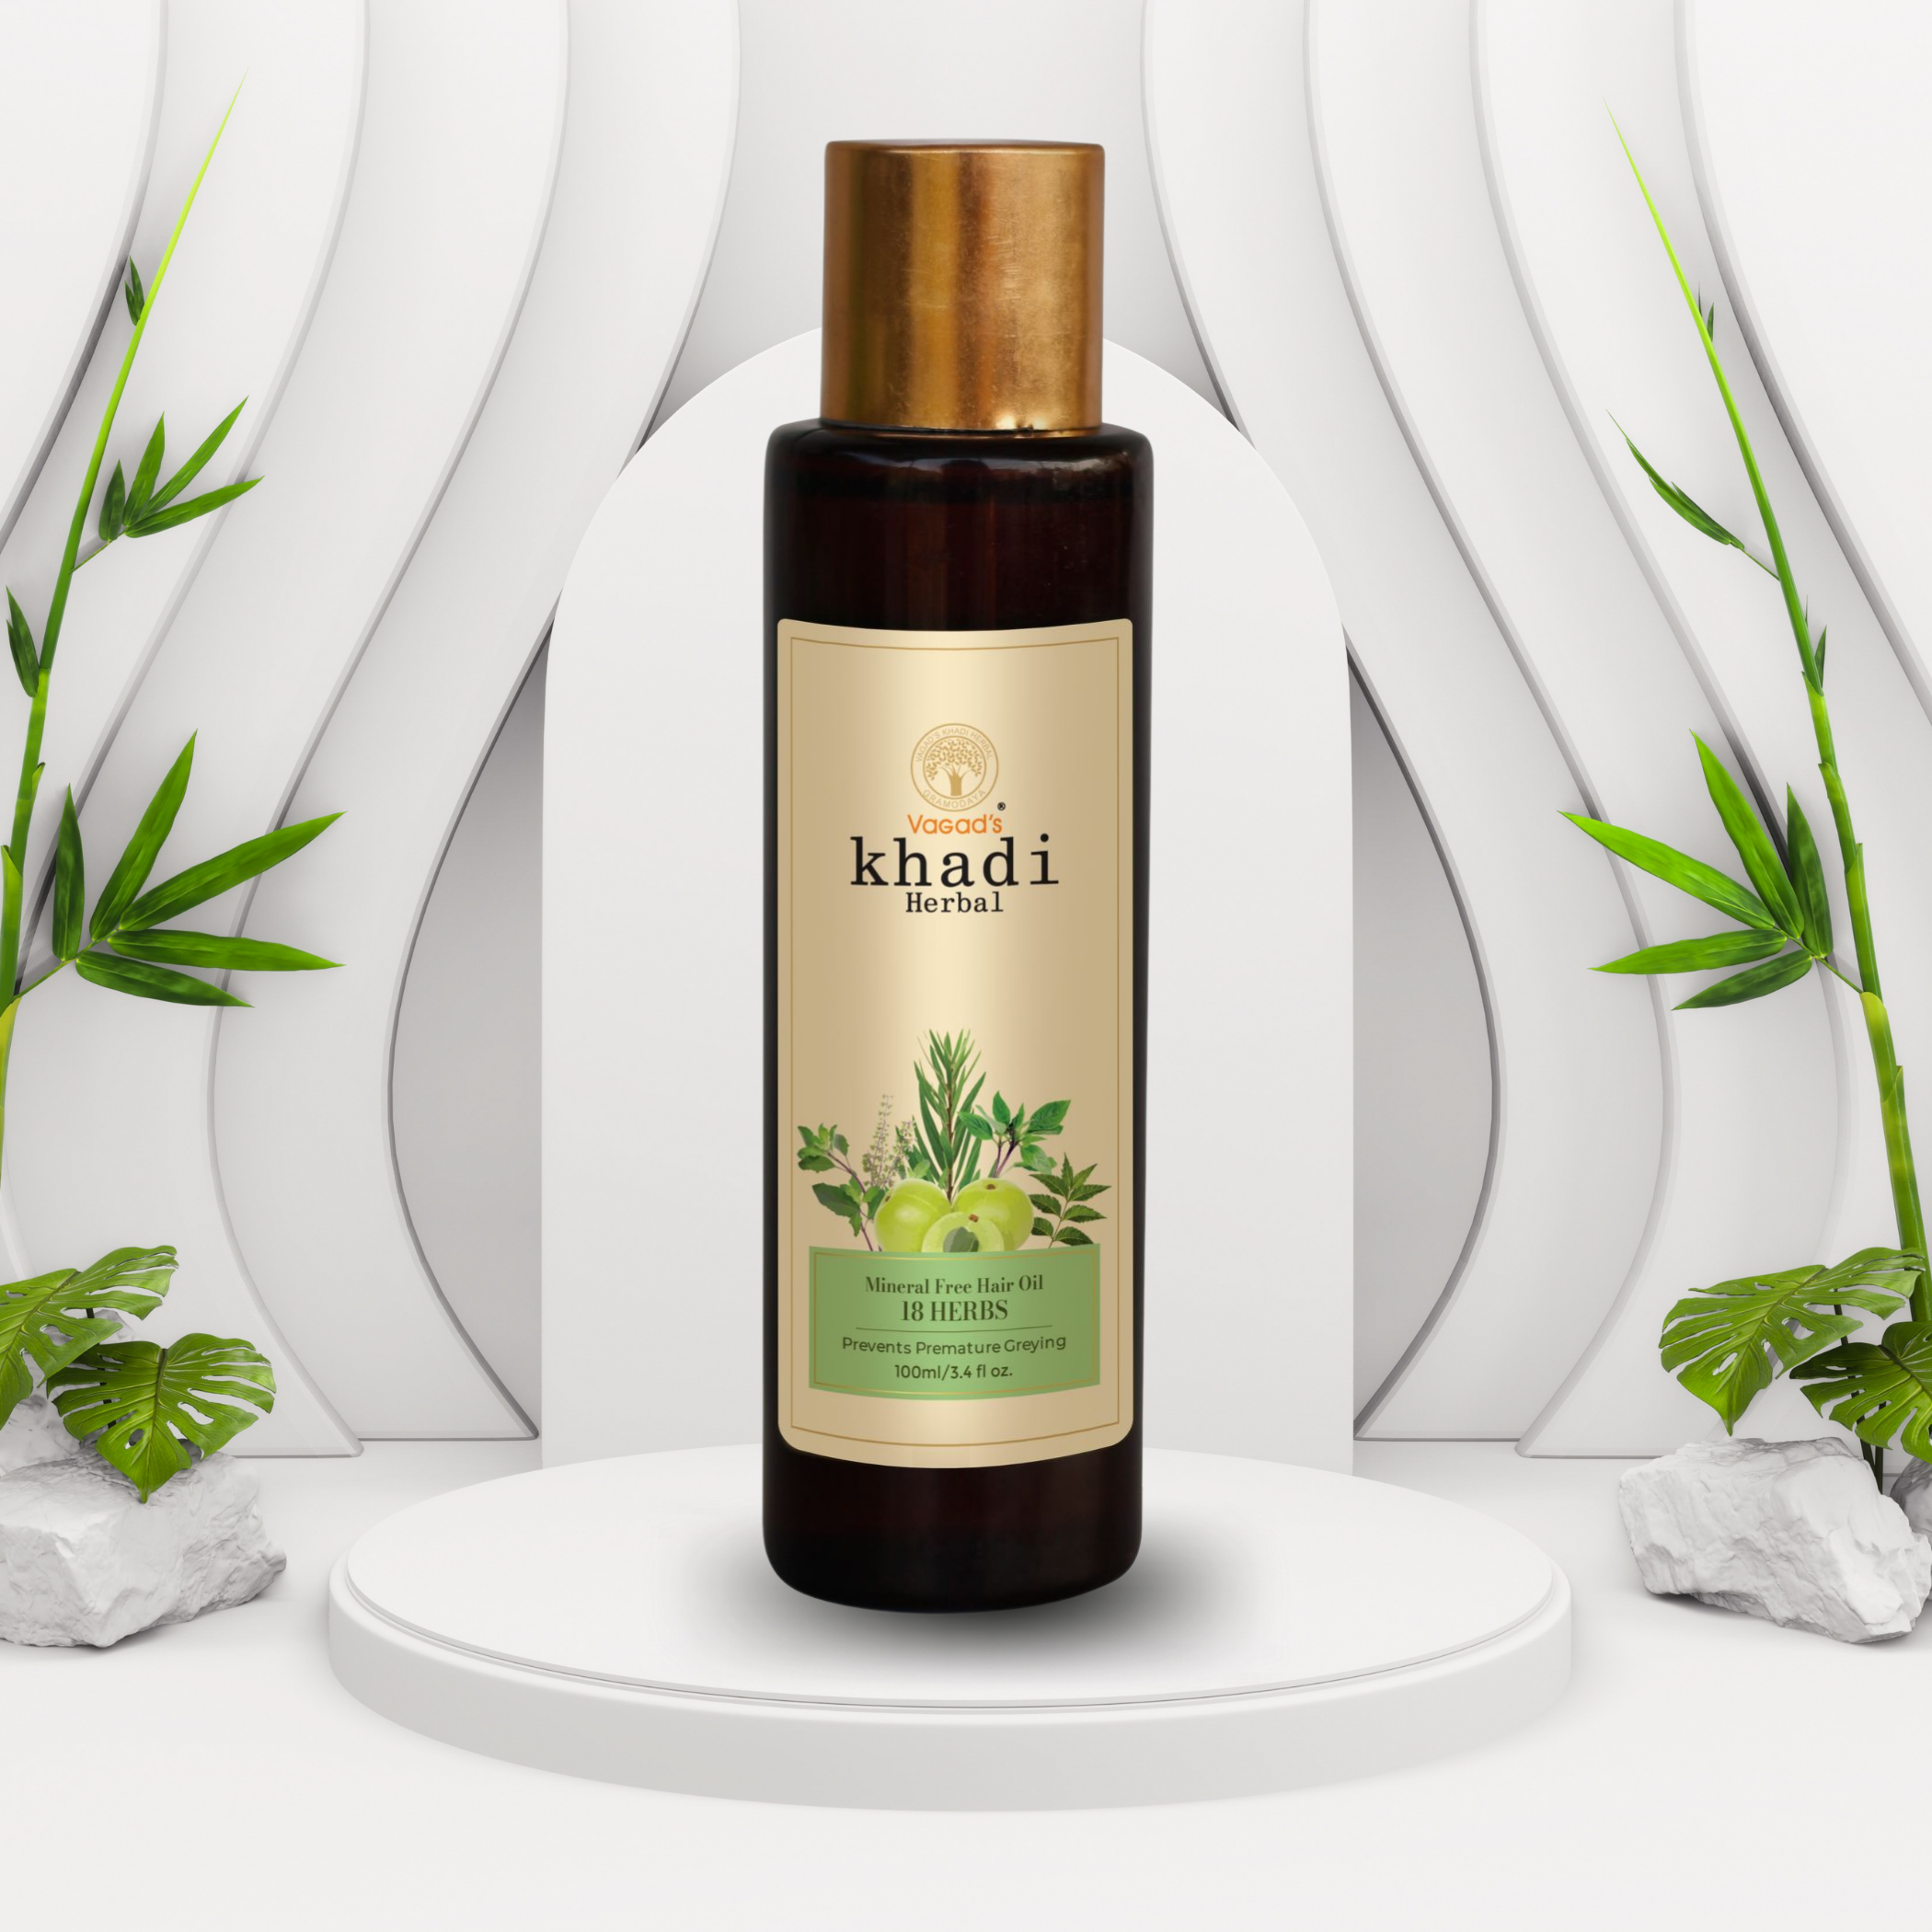 Pure 18-Herbs Mineral Free Hair Oil